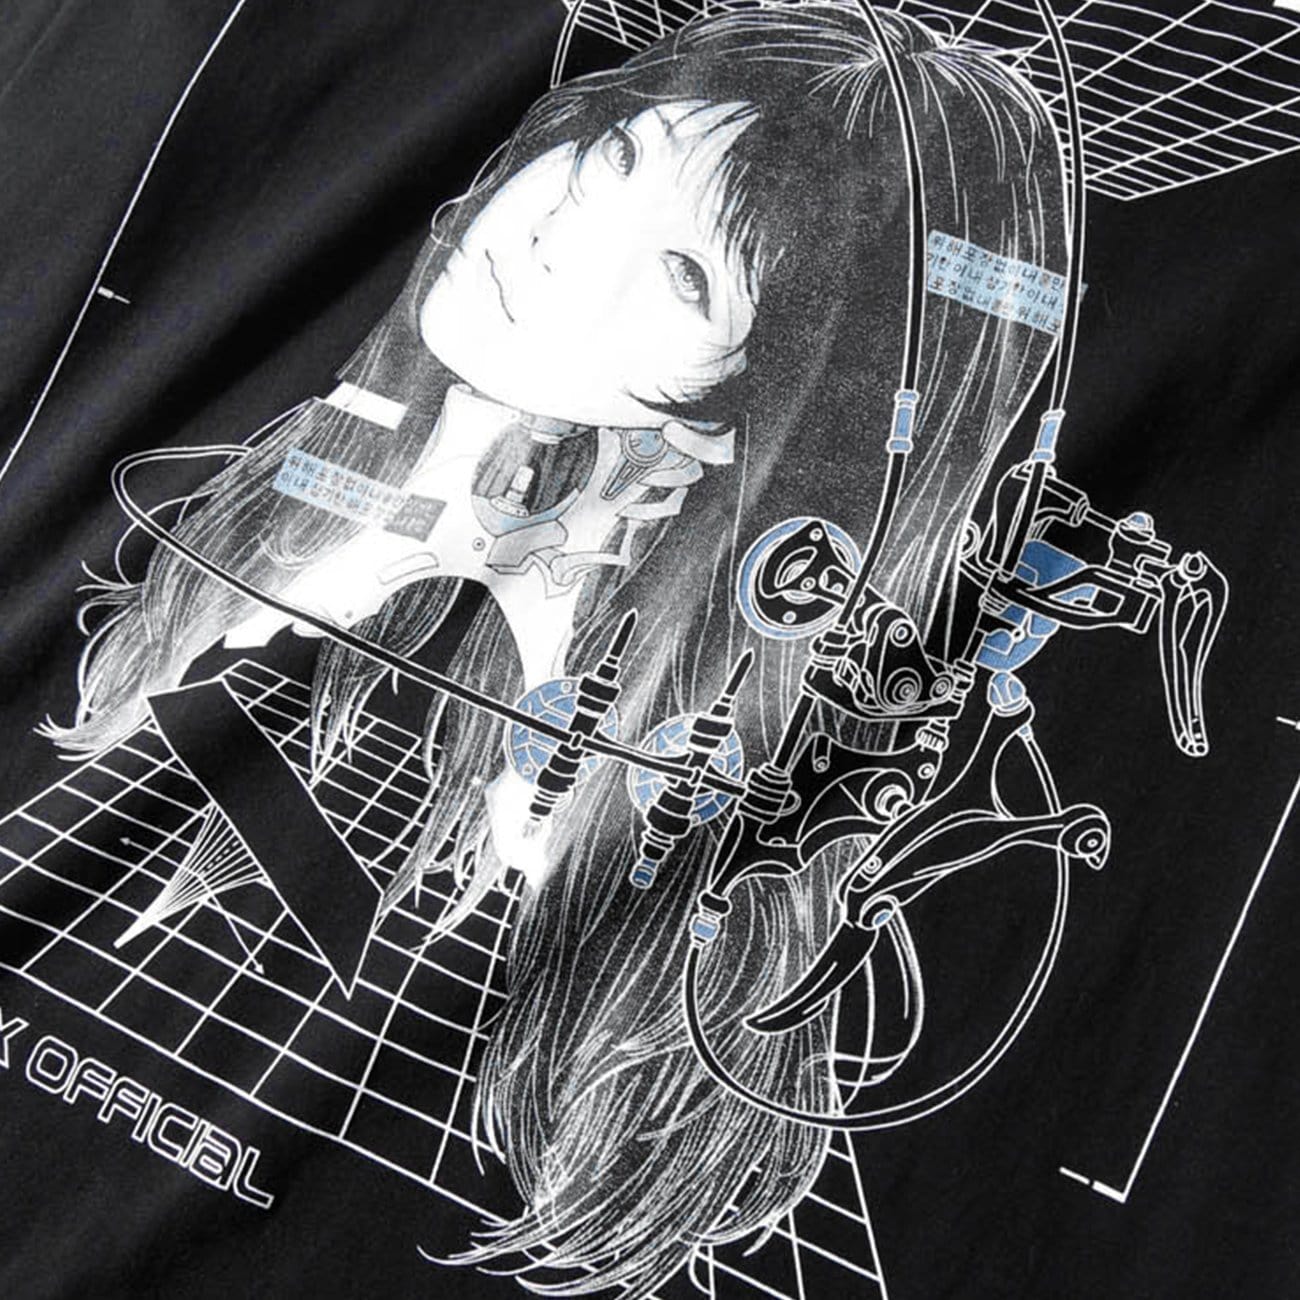 Punk Mechanical Girl Print Cotton T-Shirt